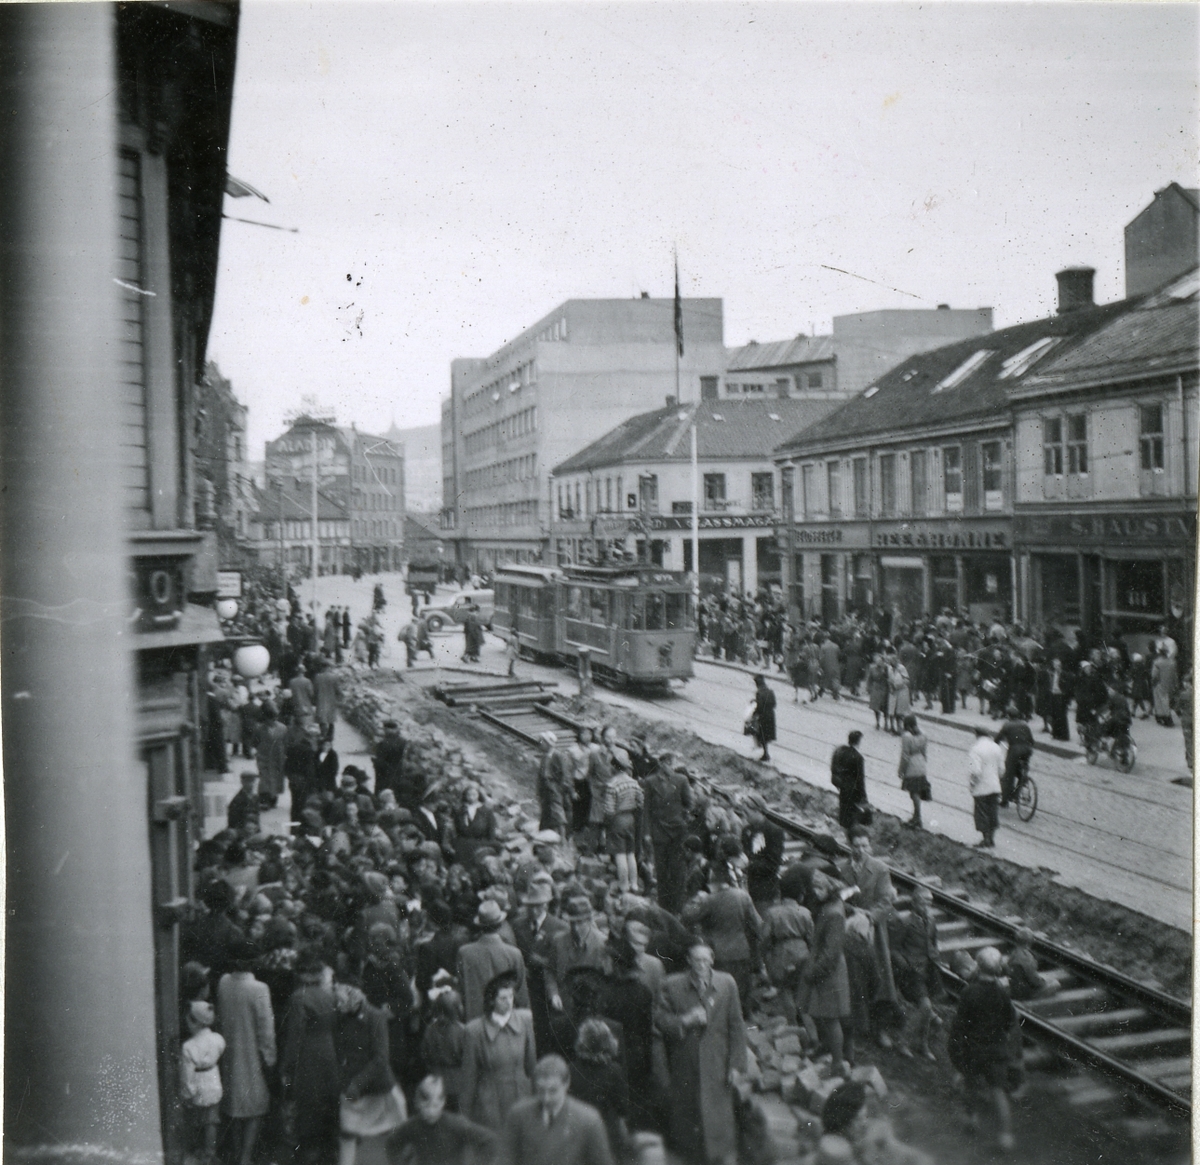 Fra familiealbum. Tyskerne anla jernbane i Olav Tryggvasons gate i Trondheim i mars 1945.